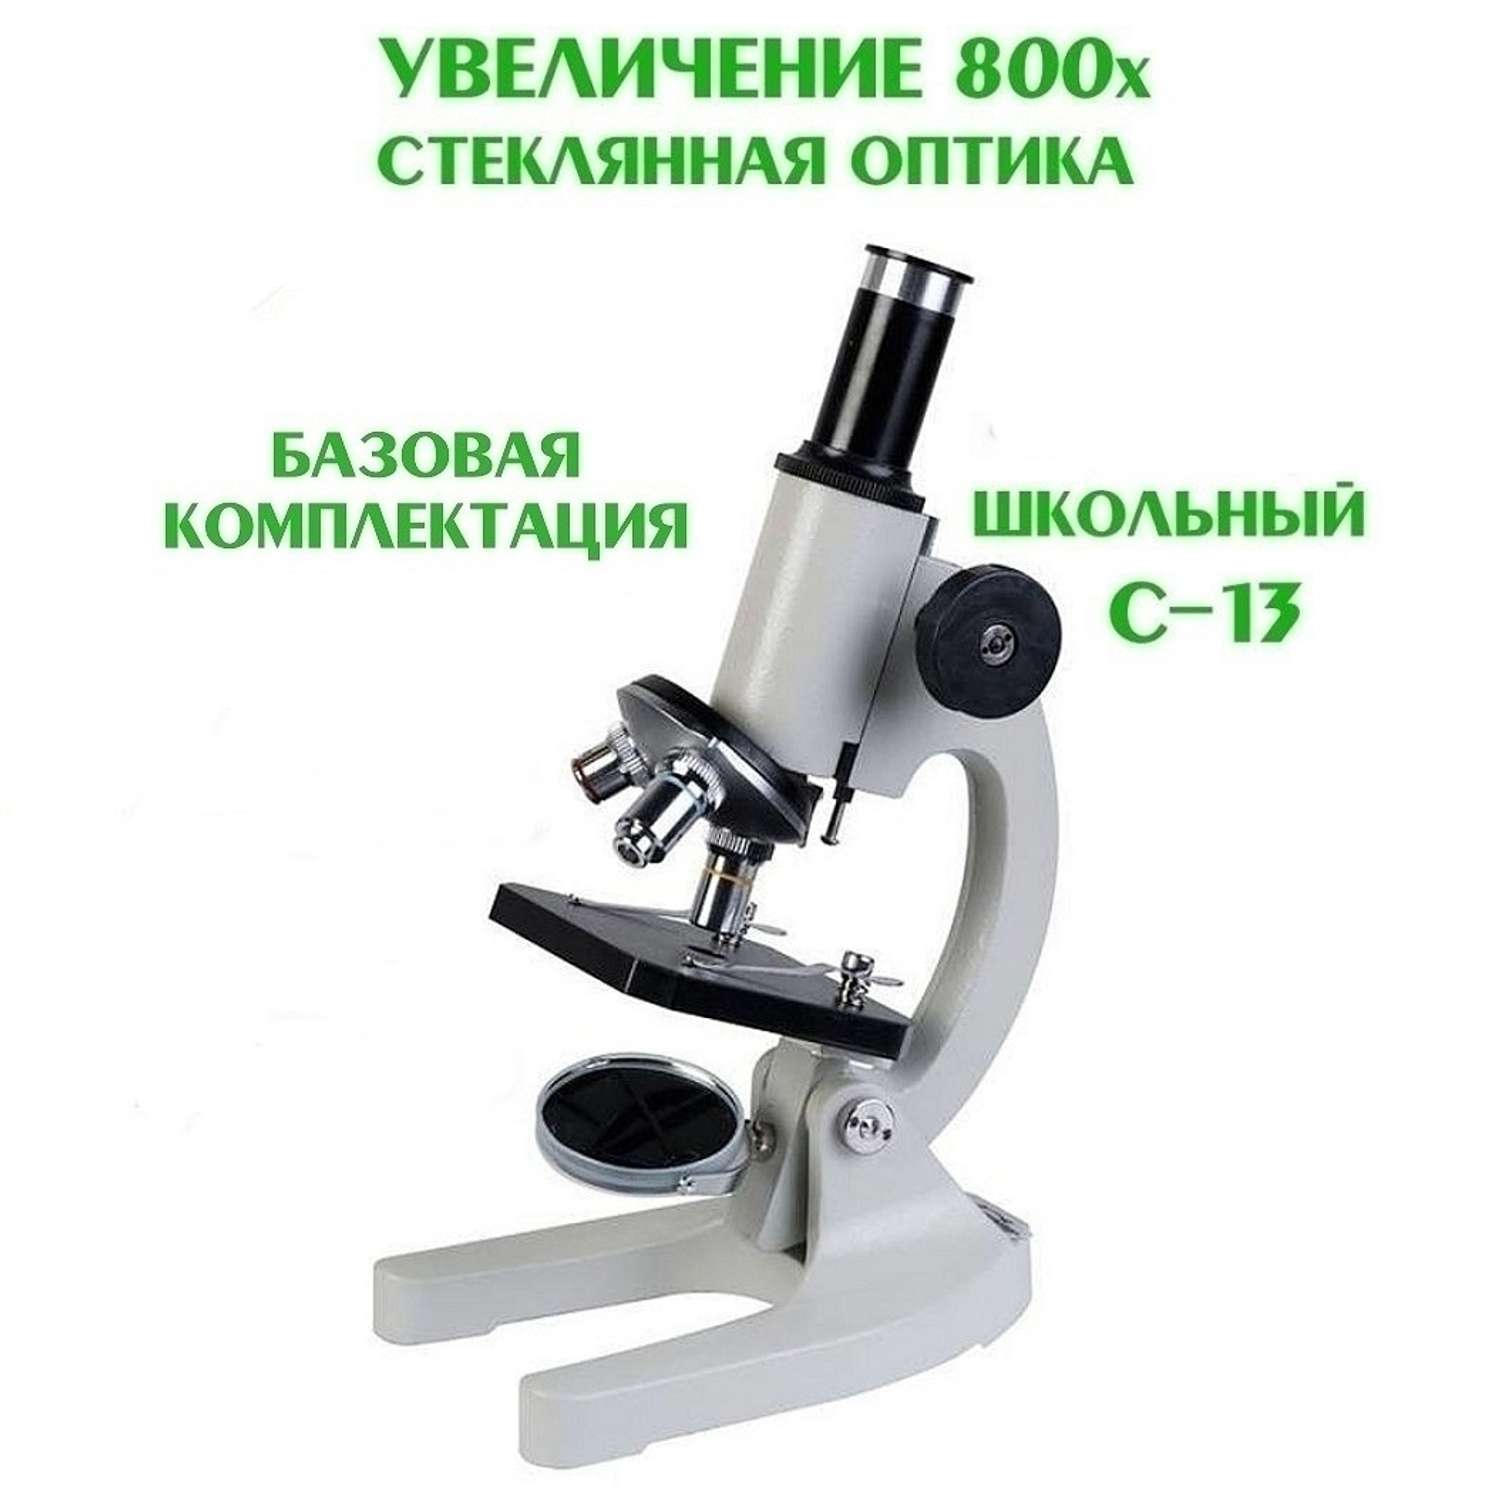 Микроскоп школьный Микромед С-13 стеклянная оптика с увеличением 800х - фото 2